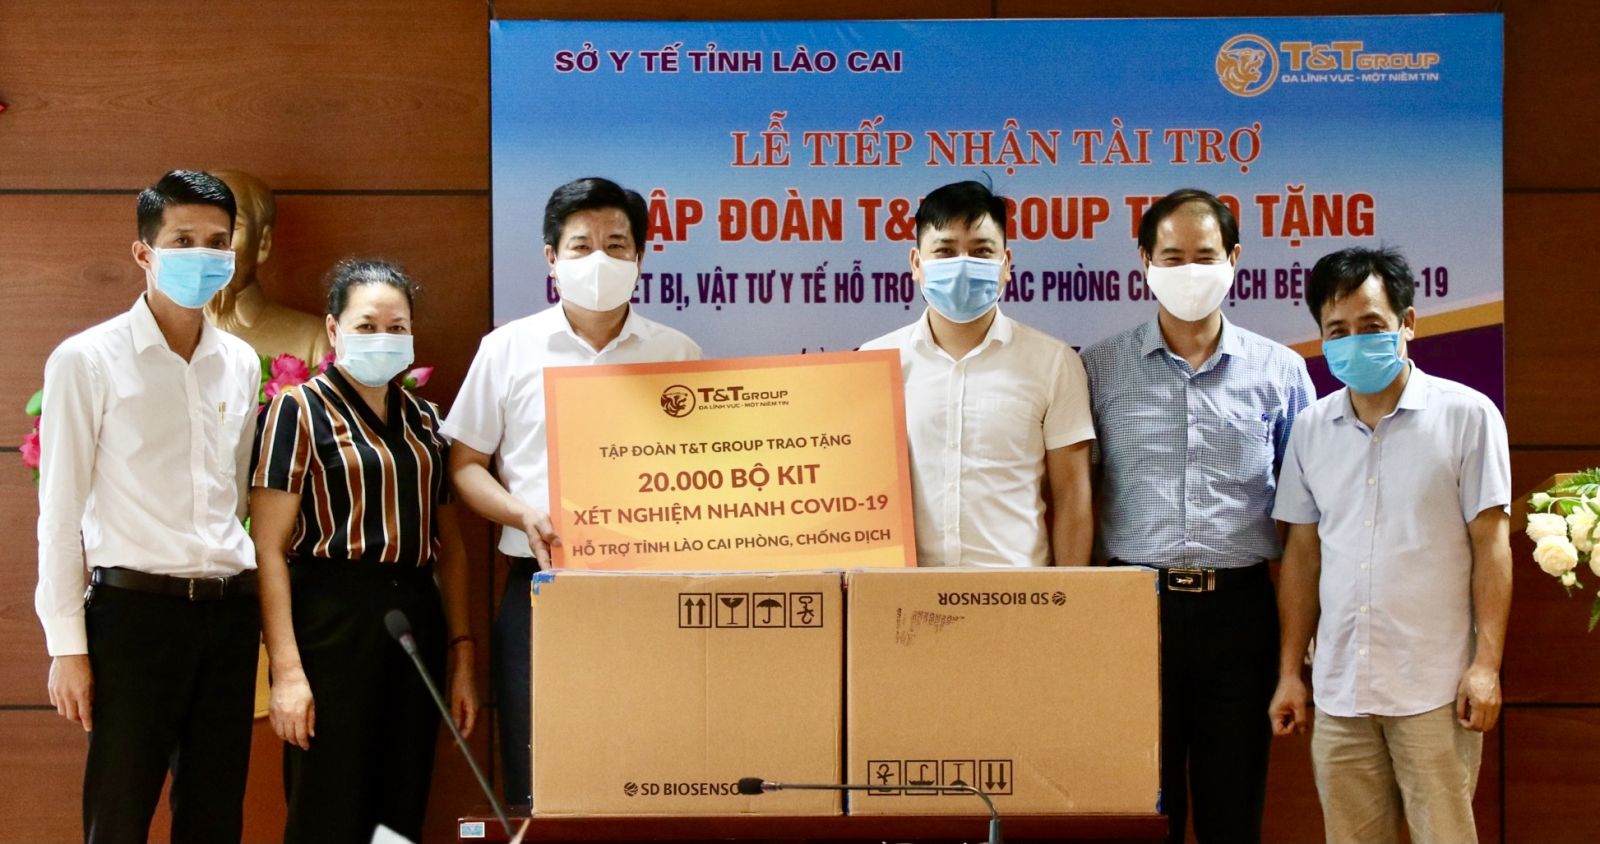 Đại diện Trung tâm kiểm soát bệnh tật tỉnh Lào Cai tiếp nhận 20.000 bộ kit xét nghiệm nhanh COVID-19 do Tập đoàn T&T Group trao tặng